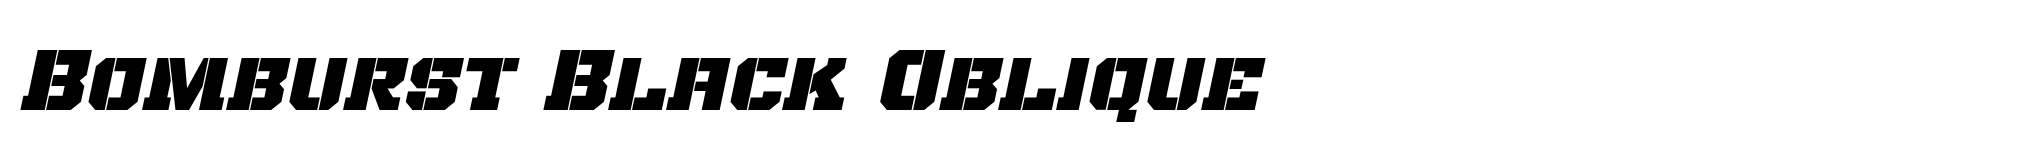 Bomburst Black Oblique image